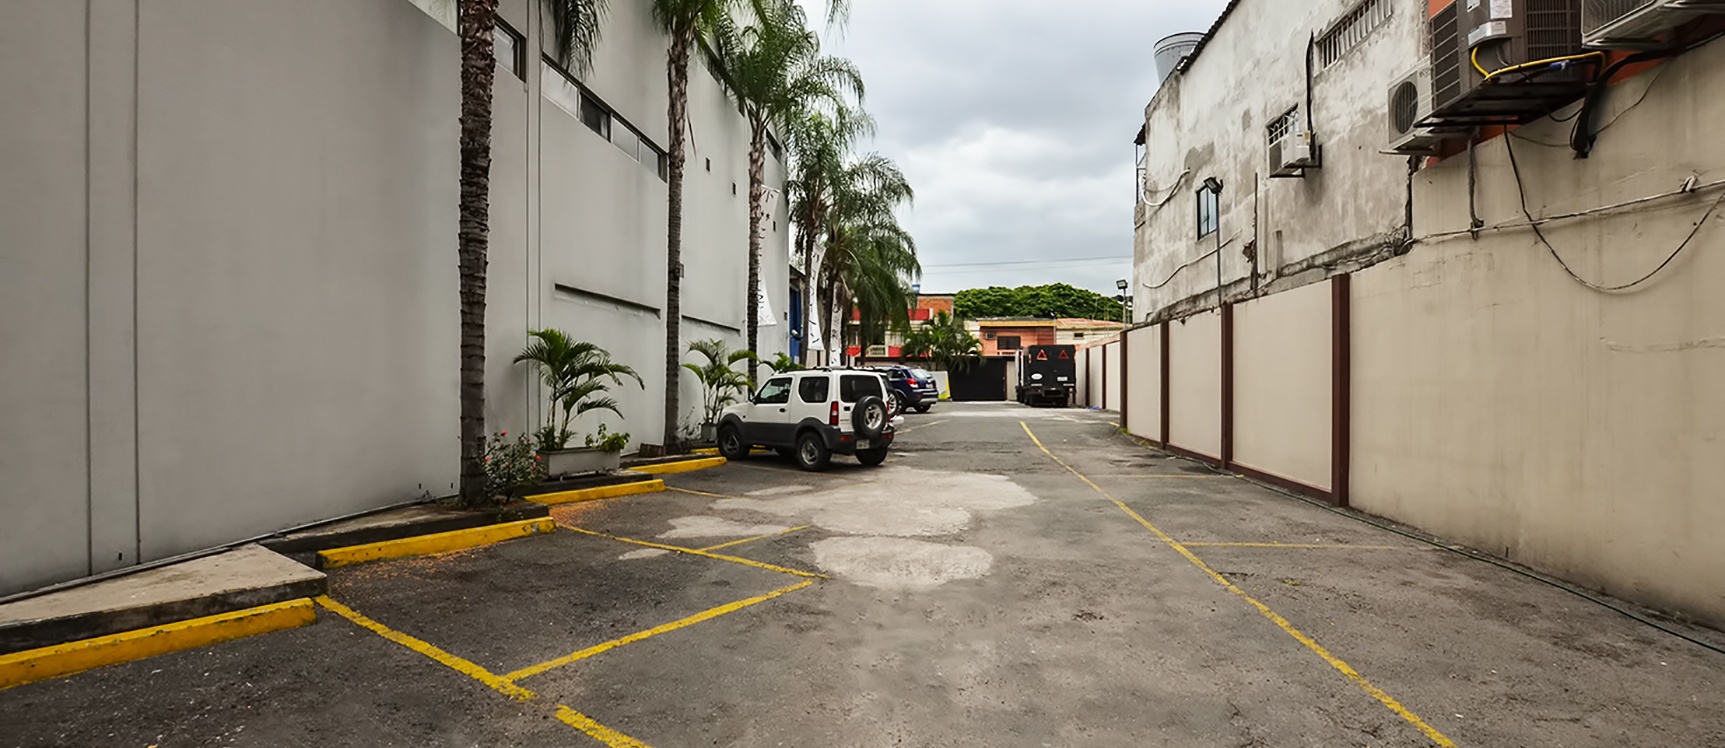 GeoBienes - Local Comercial en alquiler en Urdesa Central sector norte de Guayaquil - Plusvalia Guayaquil Casas de venta y alquiler Inmobiliaria Ecuador